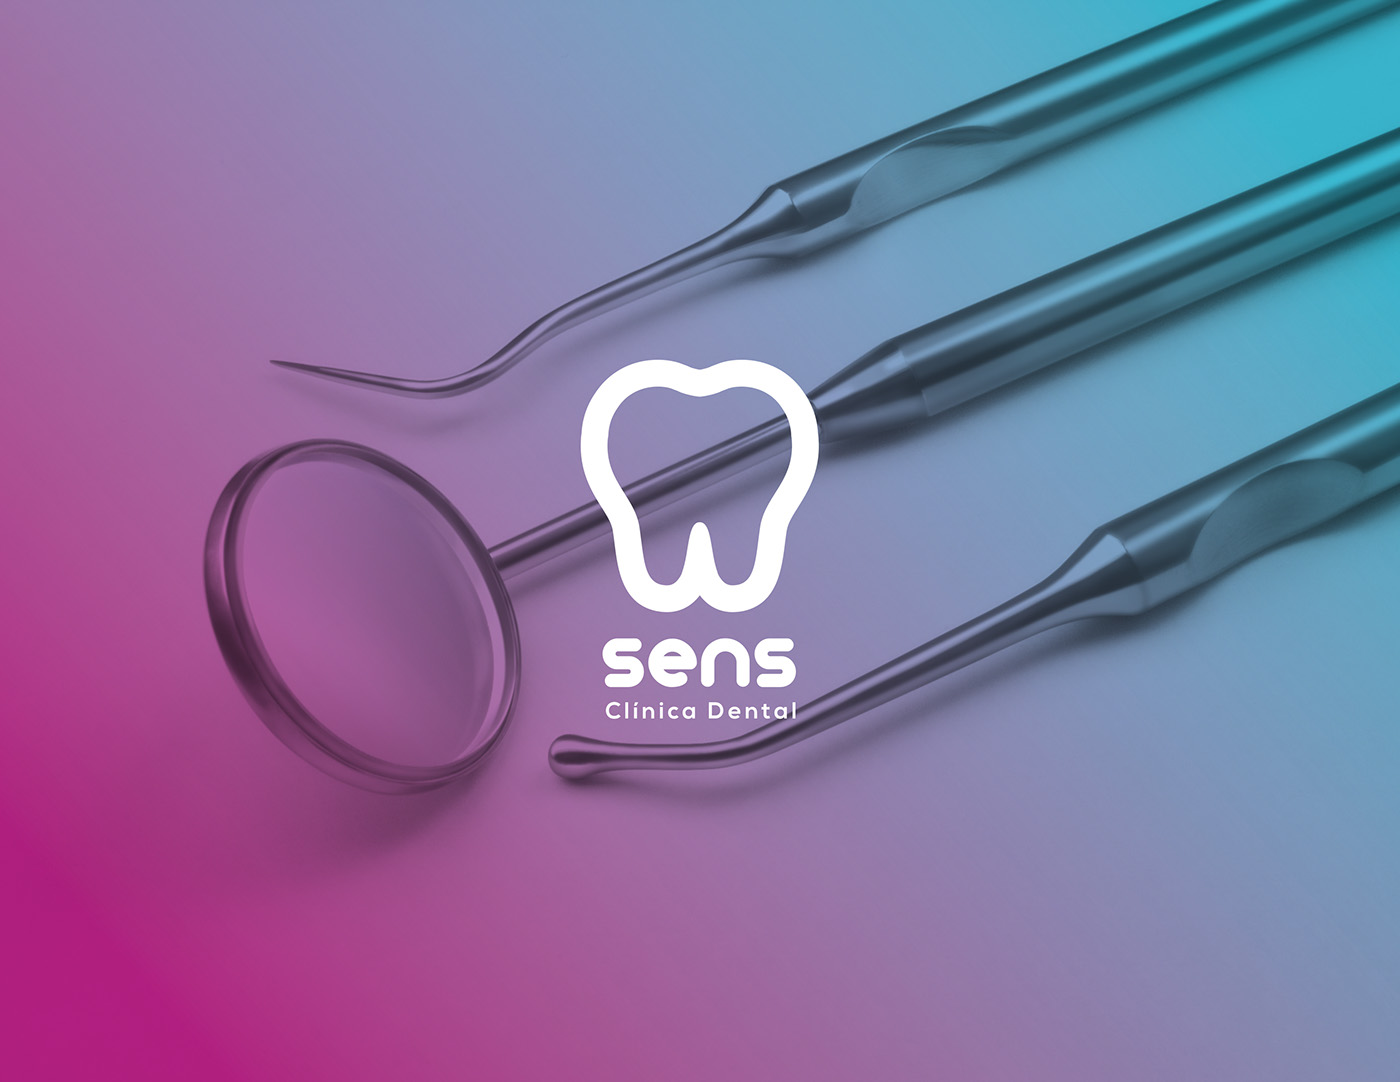 dentist Health brand logo marca dentista mexico branding  aguascalientes design